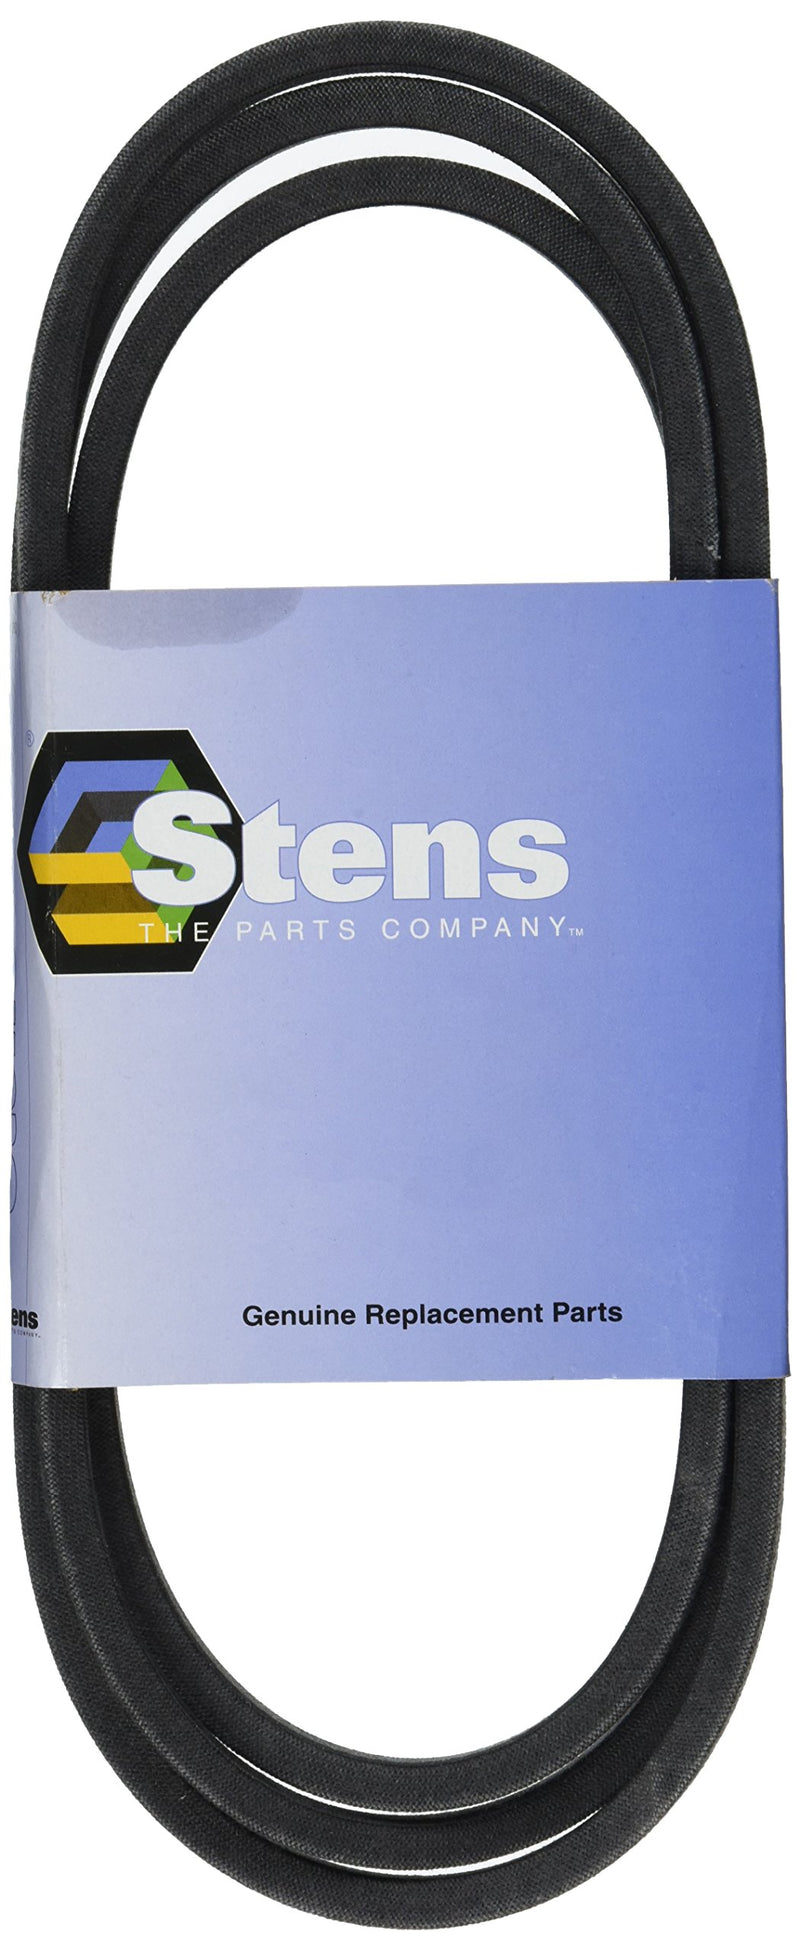 [Australia - AusPower] - Stens 265-186 Belt Replaces John Deere GX20006 88-1/2-Inch by-1/2-inch 